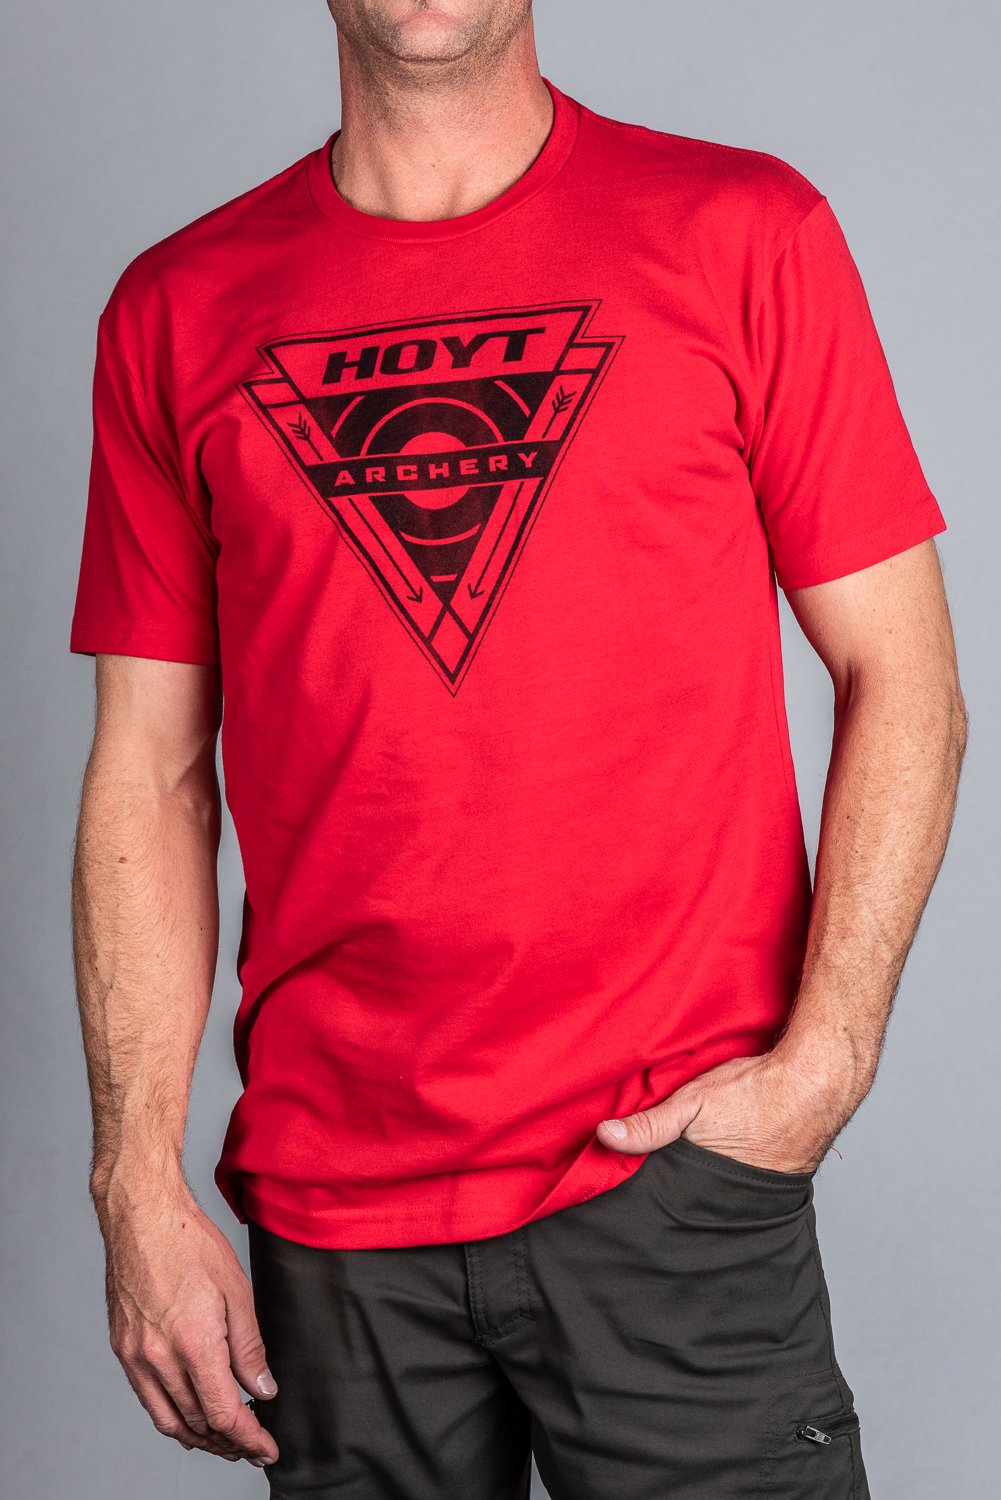 Hoyt On Target T-Shirt Medium - Midwest Archery